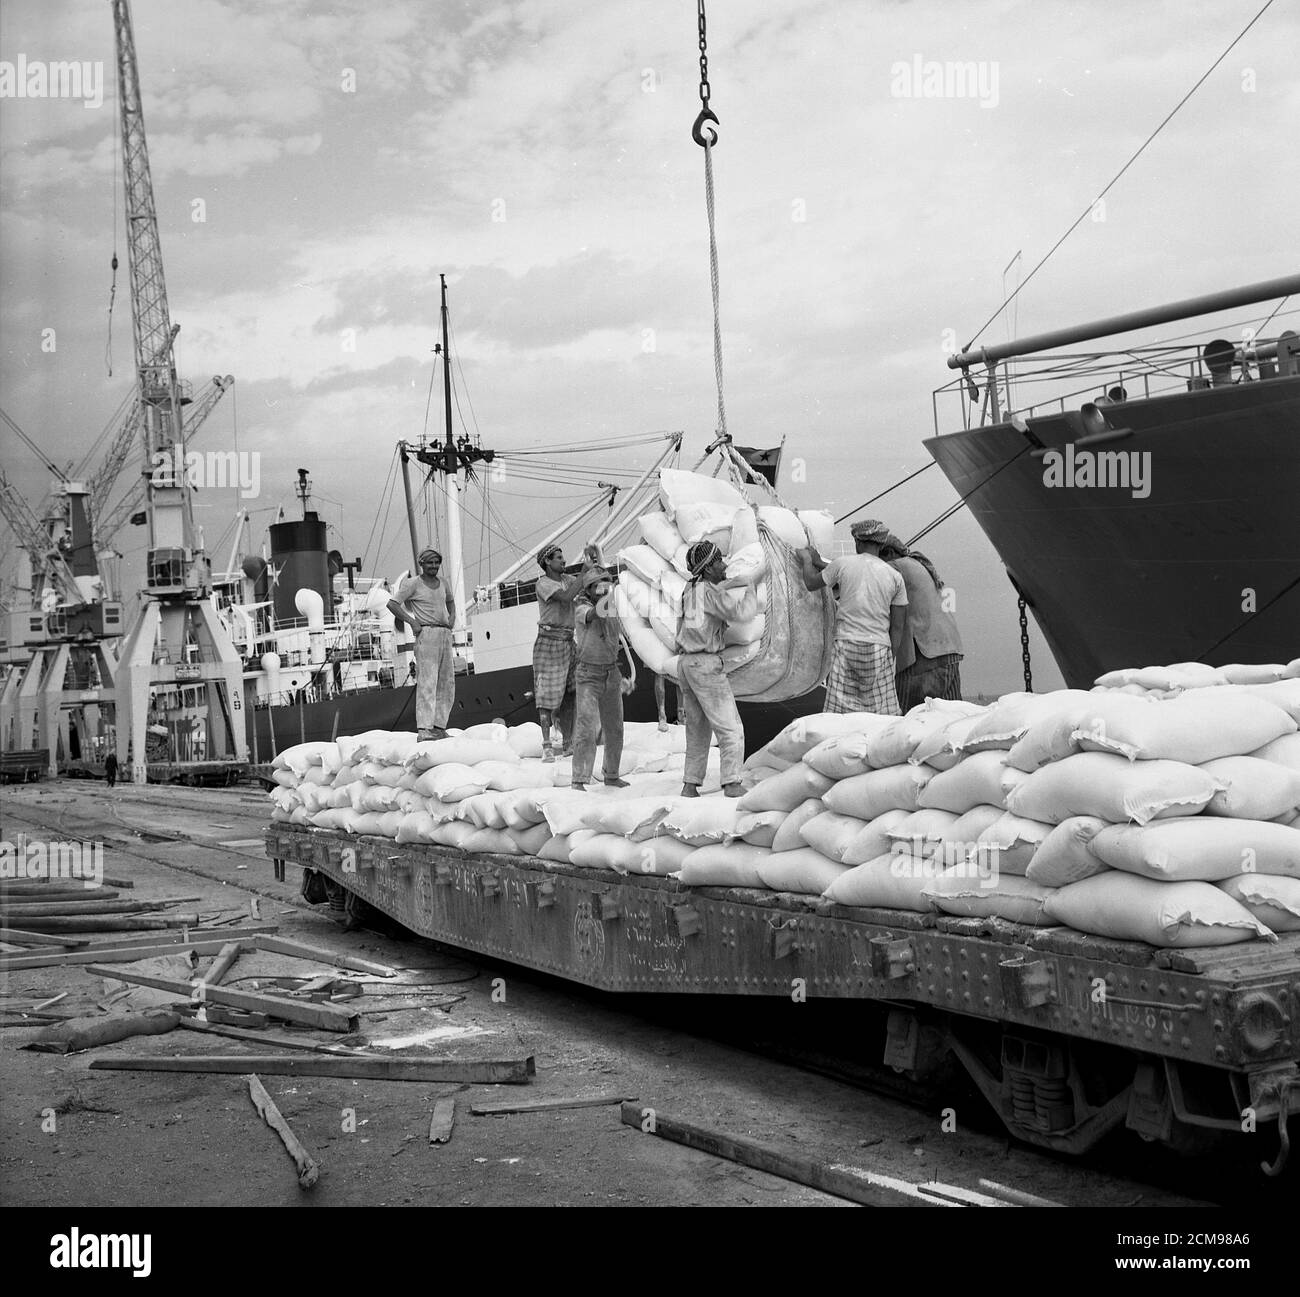 In den 1960er Jahren, historische Hafenarbeiter, die Massengüter von einem Schiff, möglicherweise Lebensmittel wie Getreide, auf einen Tieflader im Hafen von Jeddah, Saudi-Arabien, entladen, Stockfoto